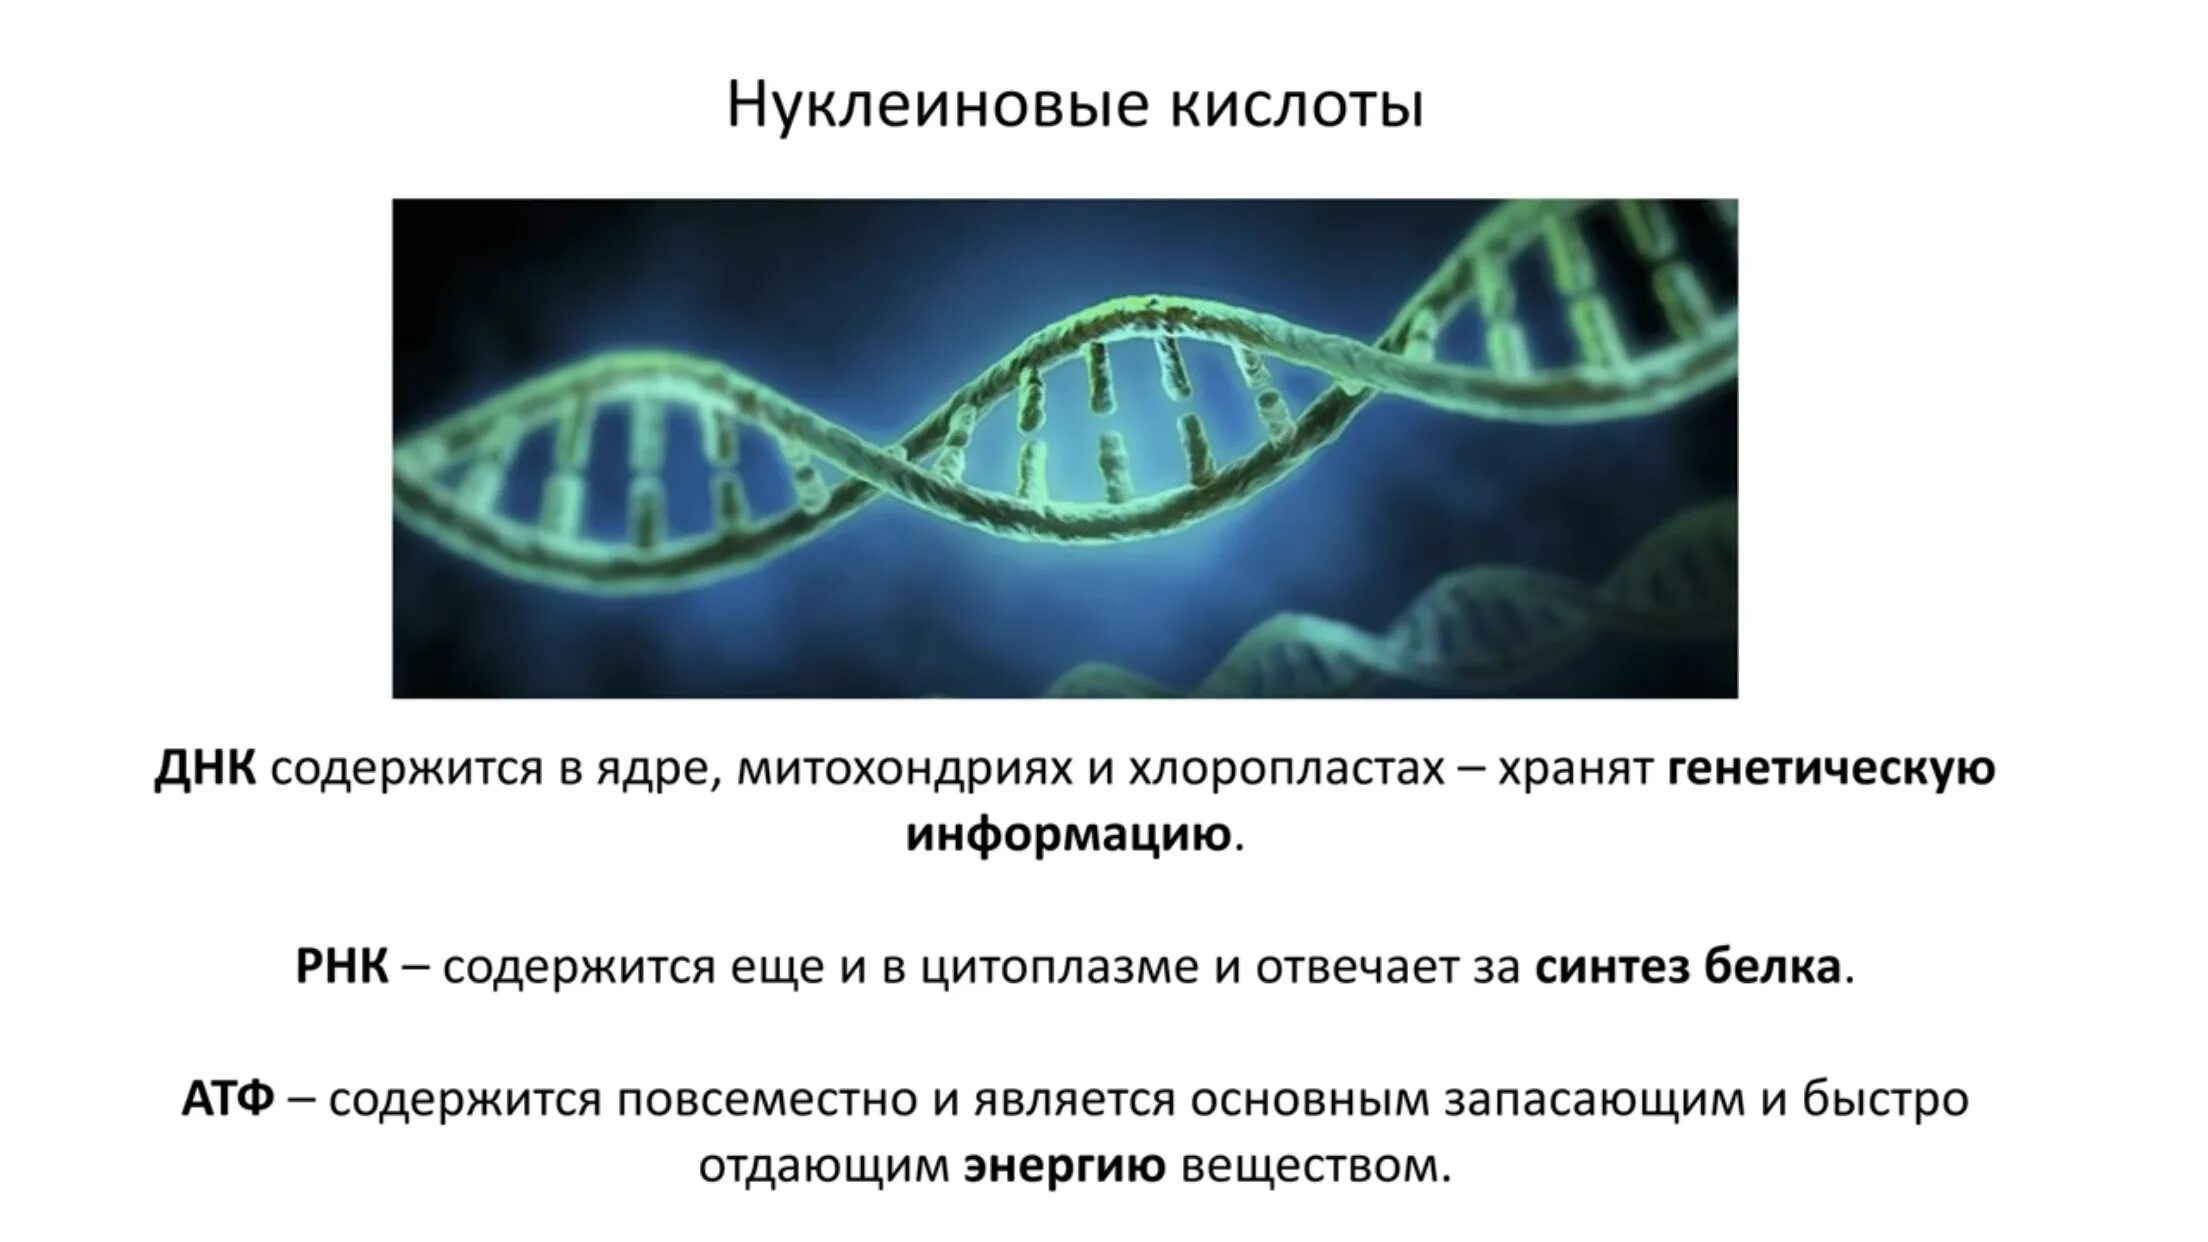 Кольцевая хромосома в митохондриях. Кольцевая ДНК В хлоропластах. В ядре содержатся нуклеиновые кислоты.